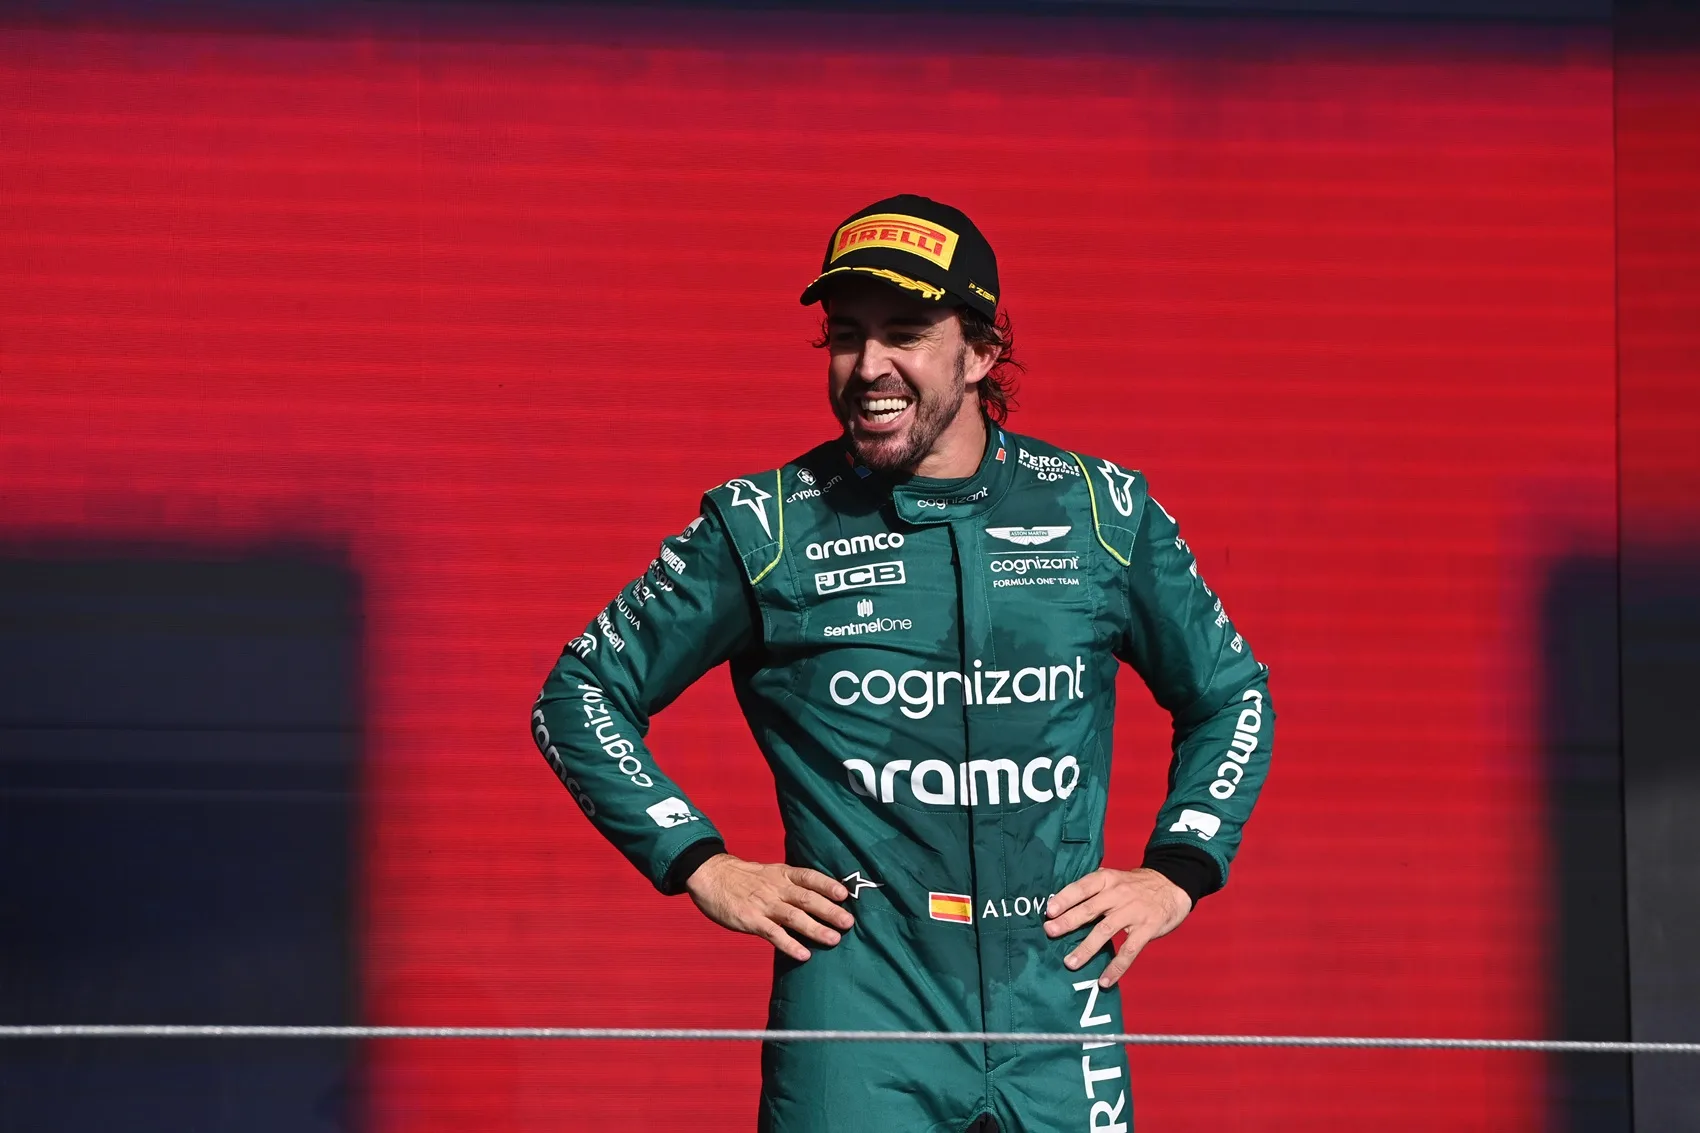 Az álom csapatok összeállnak: Ricciardo visszatér a Red Bullhoz, Alonso a Mercedesnél – így nézhet ki a 2025-ös F1-es mezőny